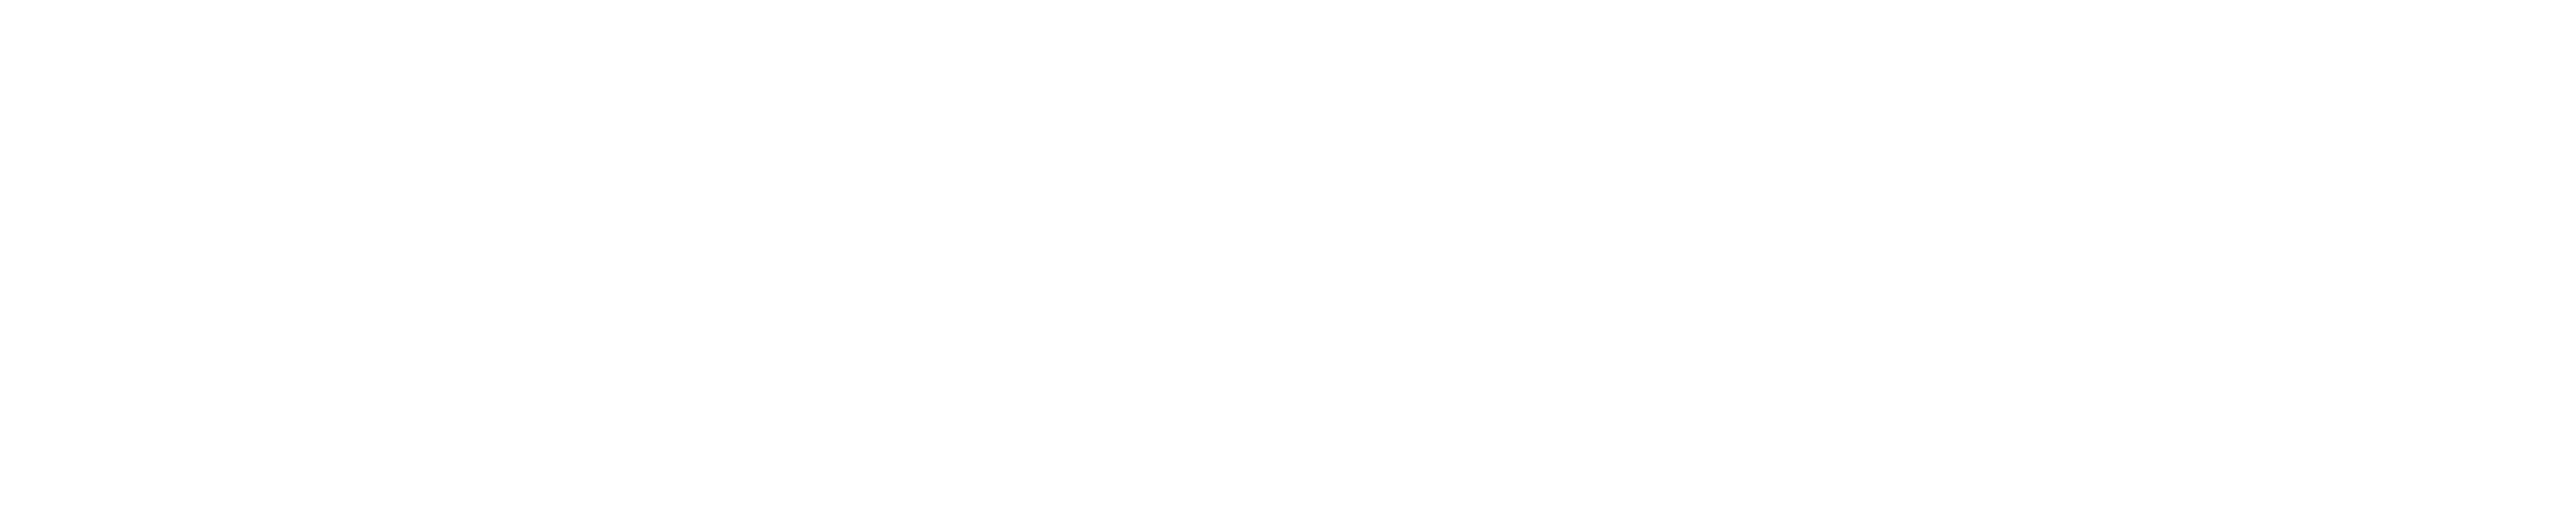 Deathloop logosu